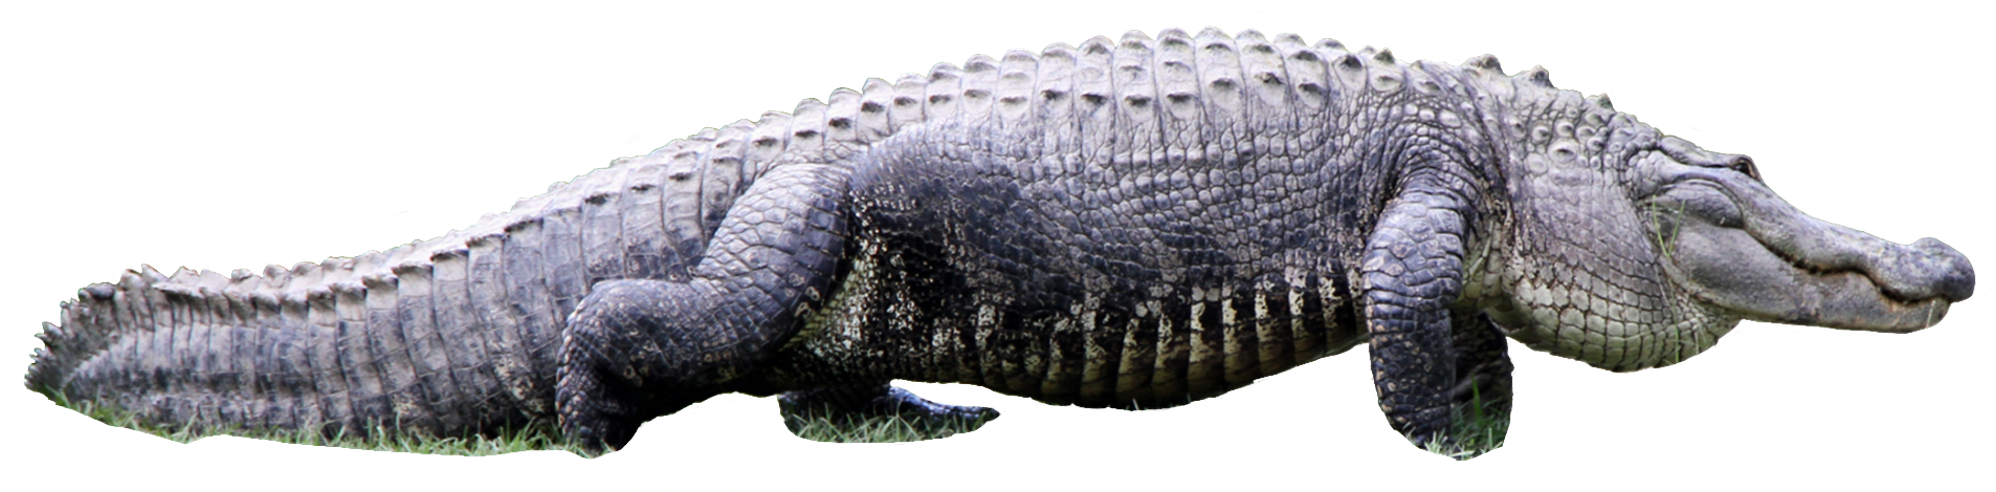 التمساح PNG ملف